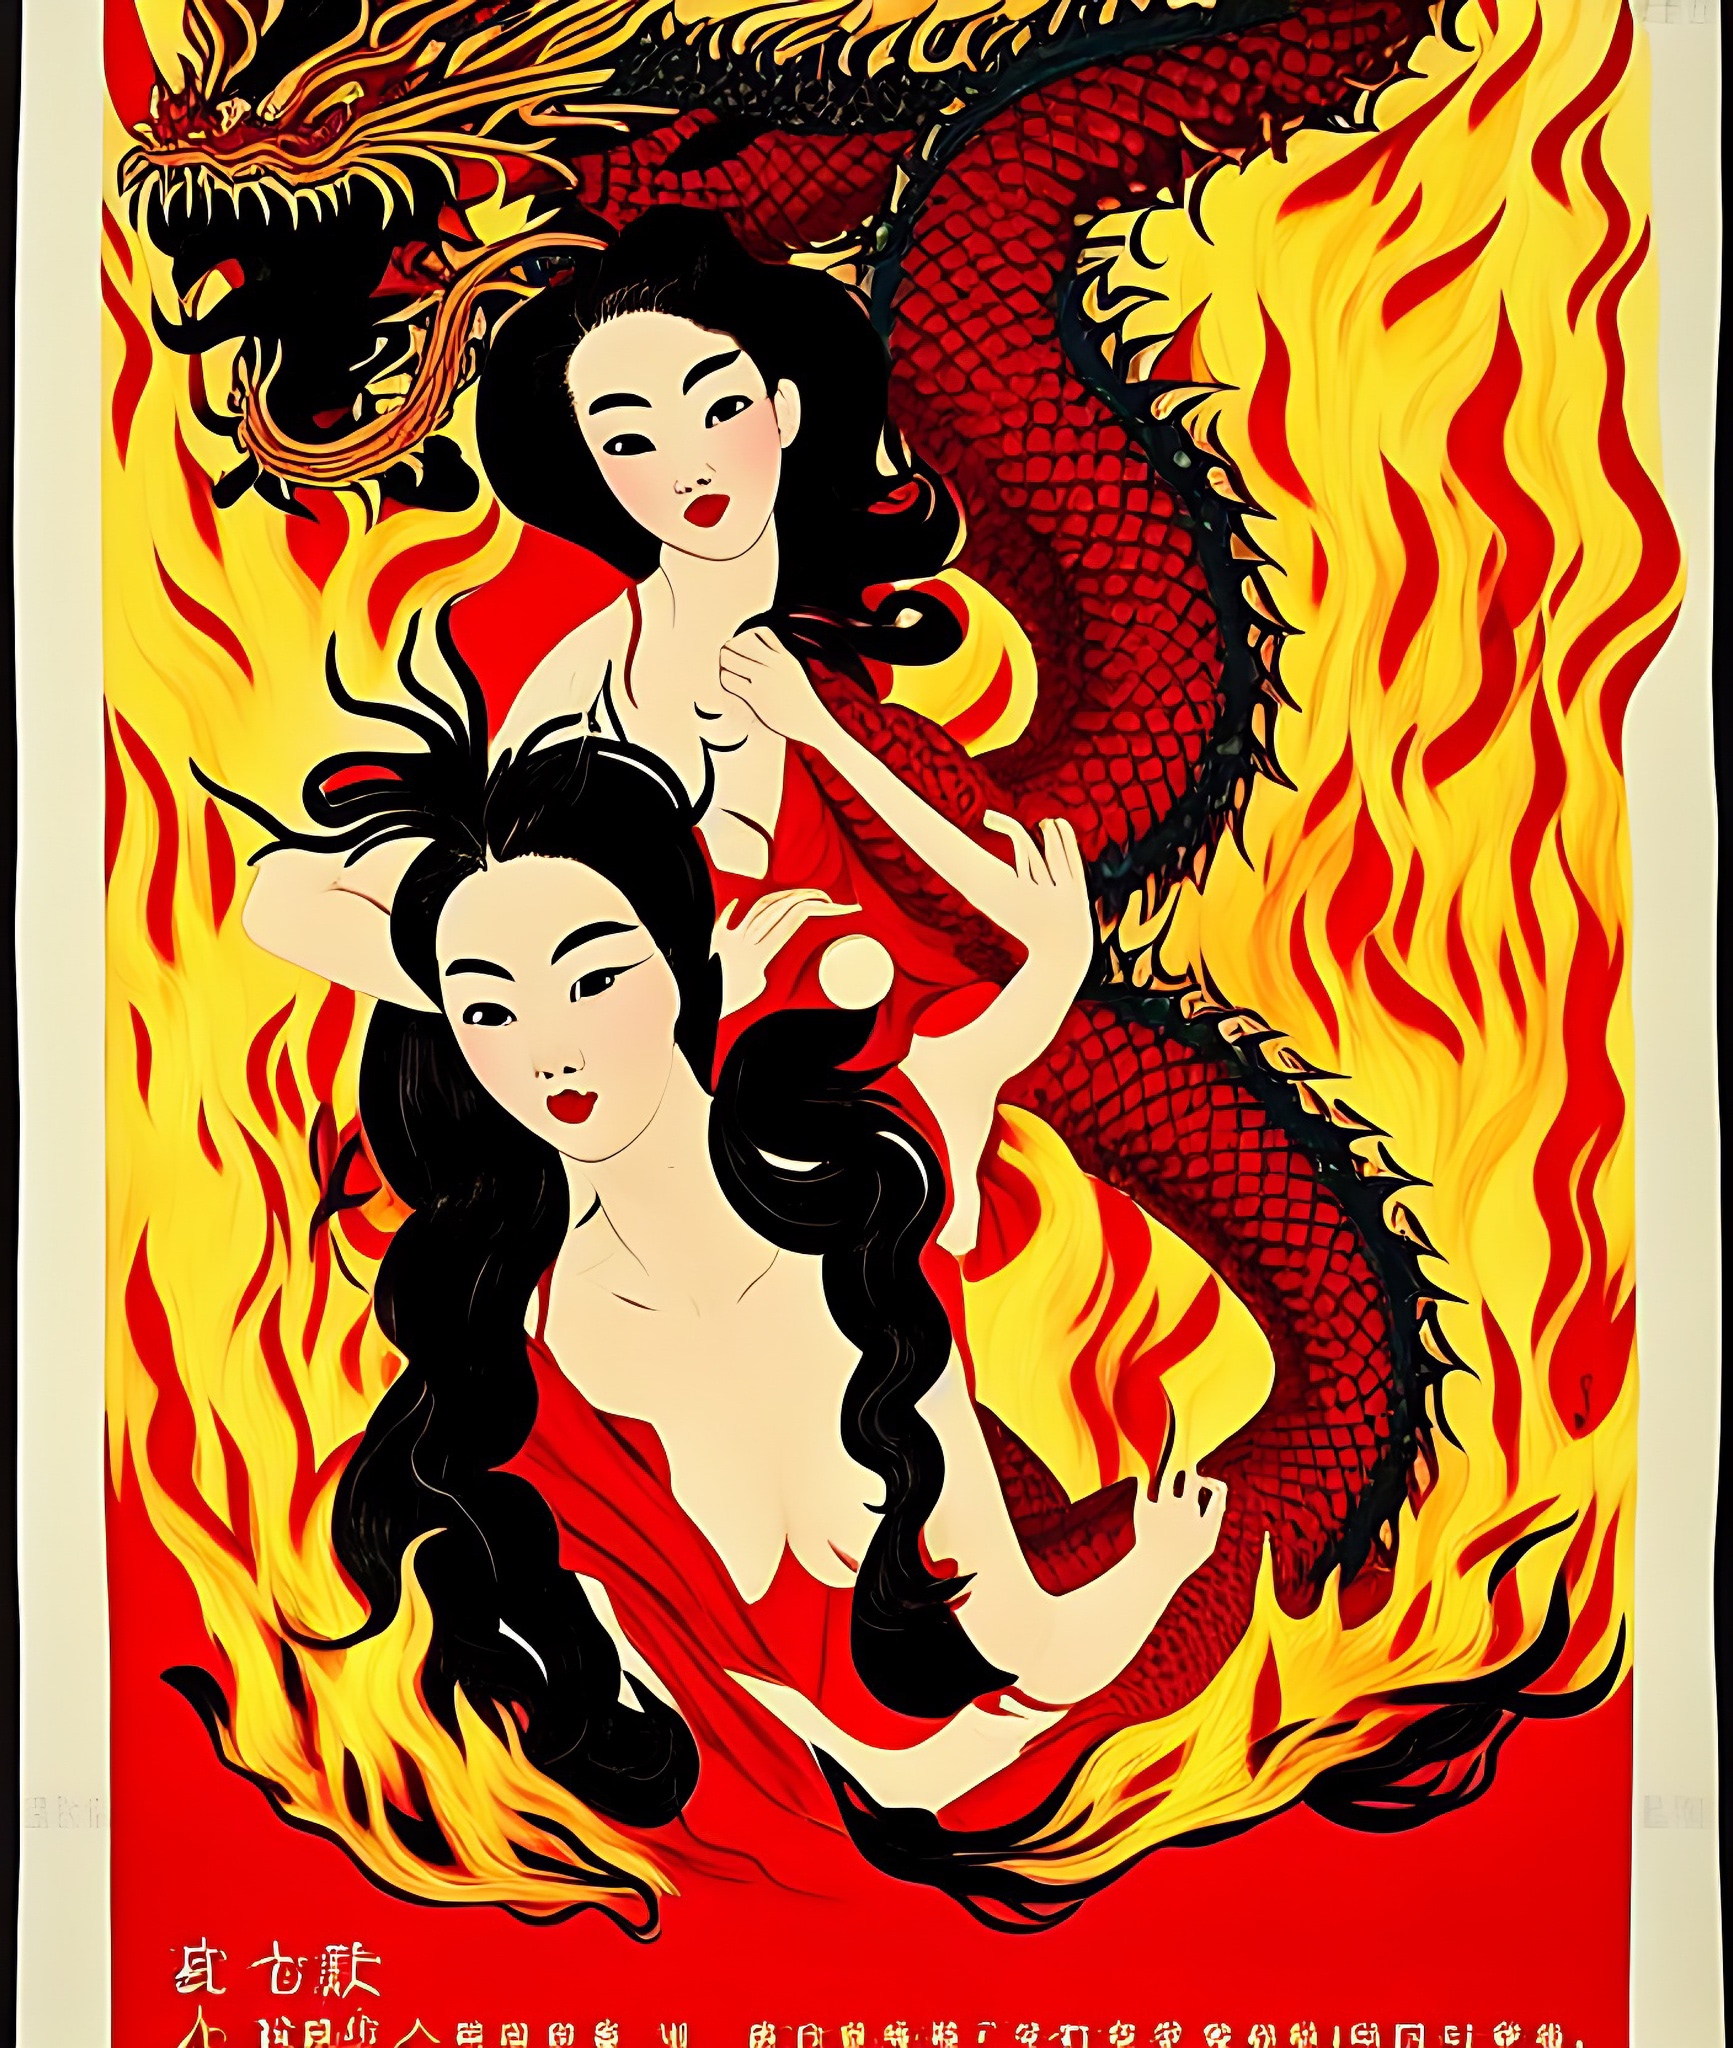 vintage-movie-poster-flames-girl-dragon-hongkong-1